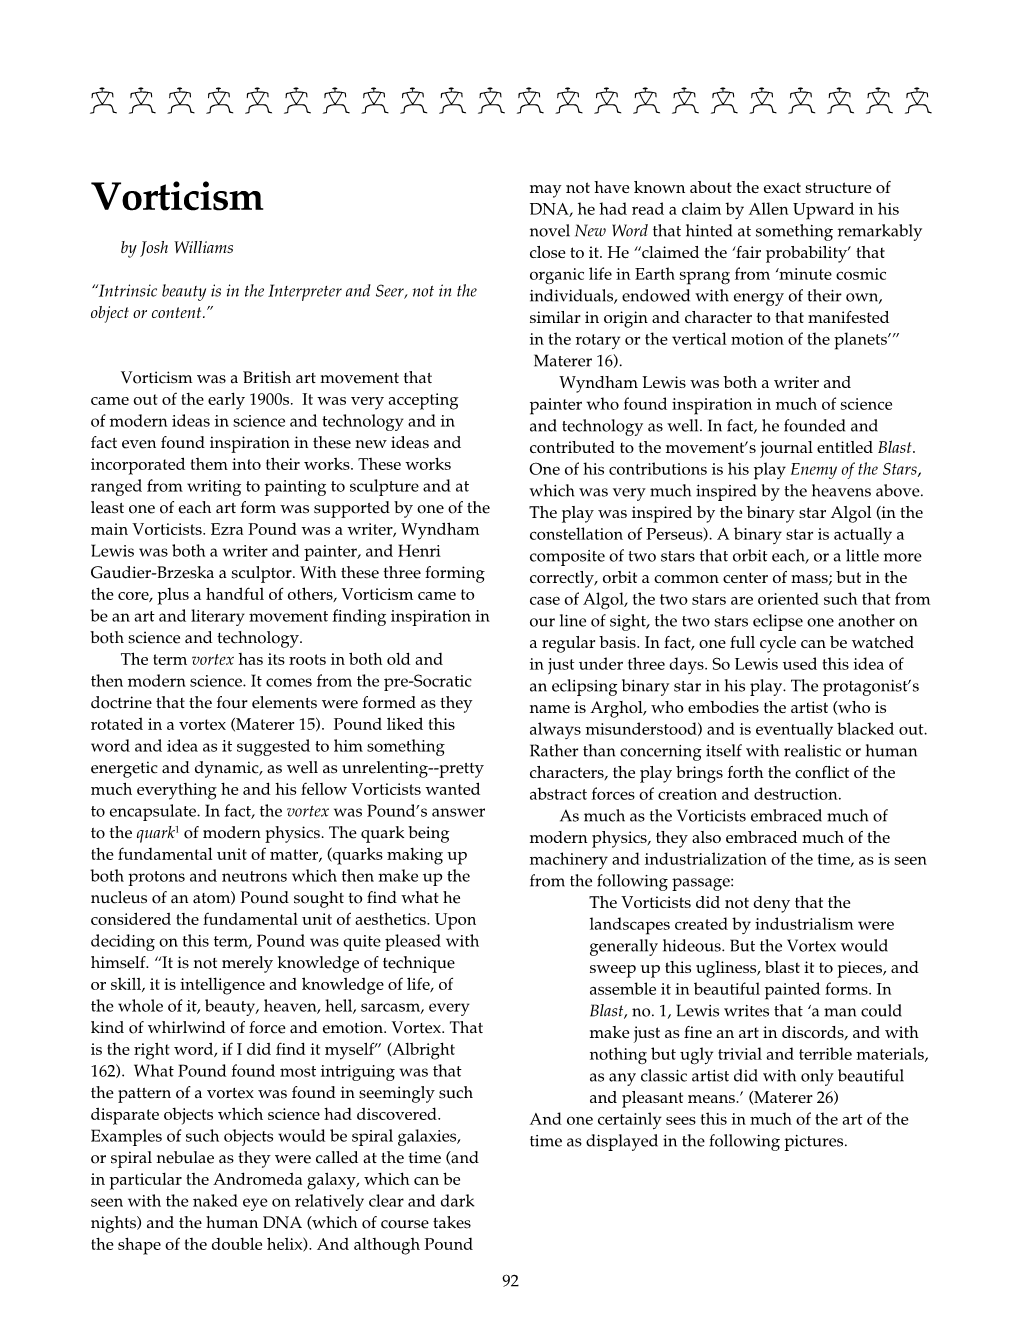 Vorticism by Josh Williams